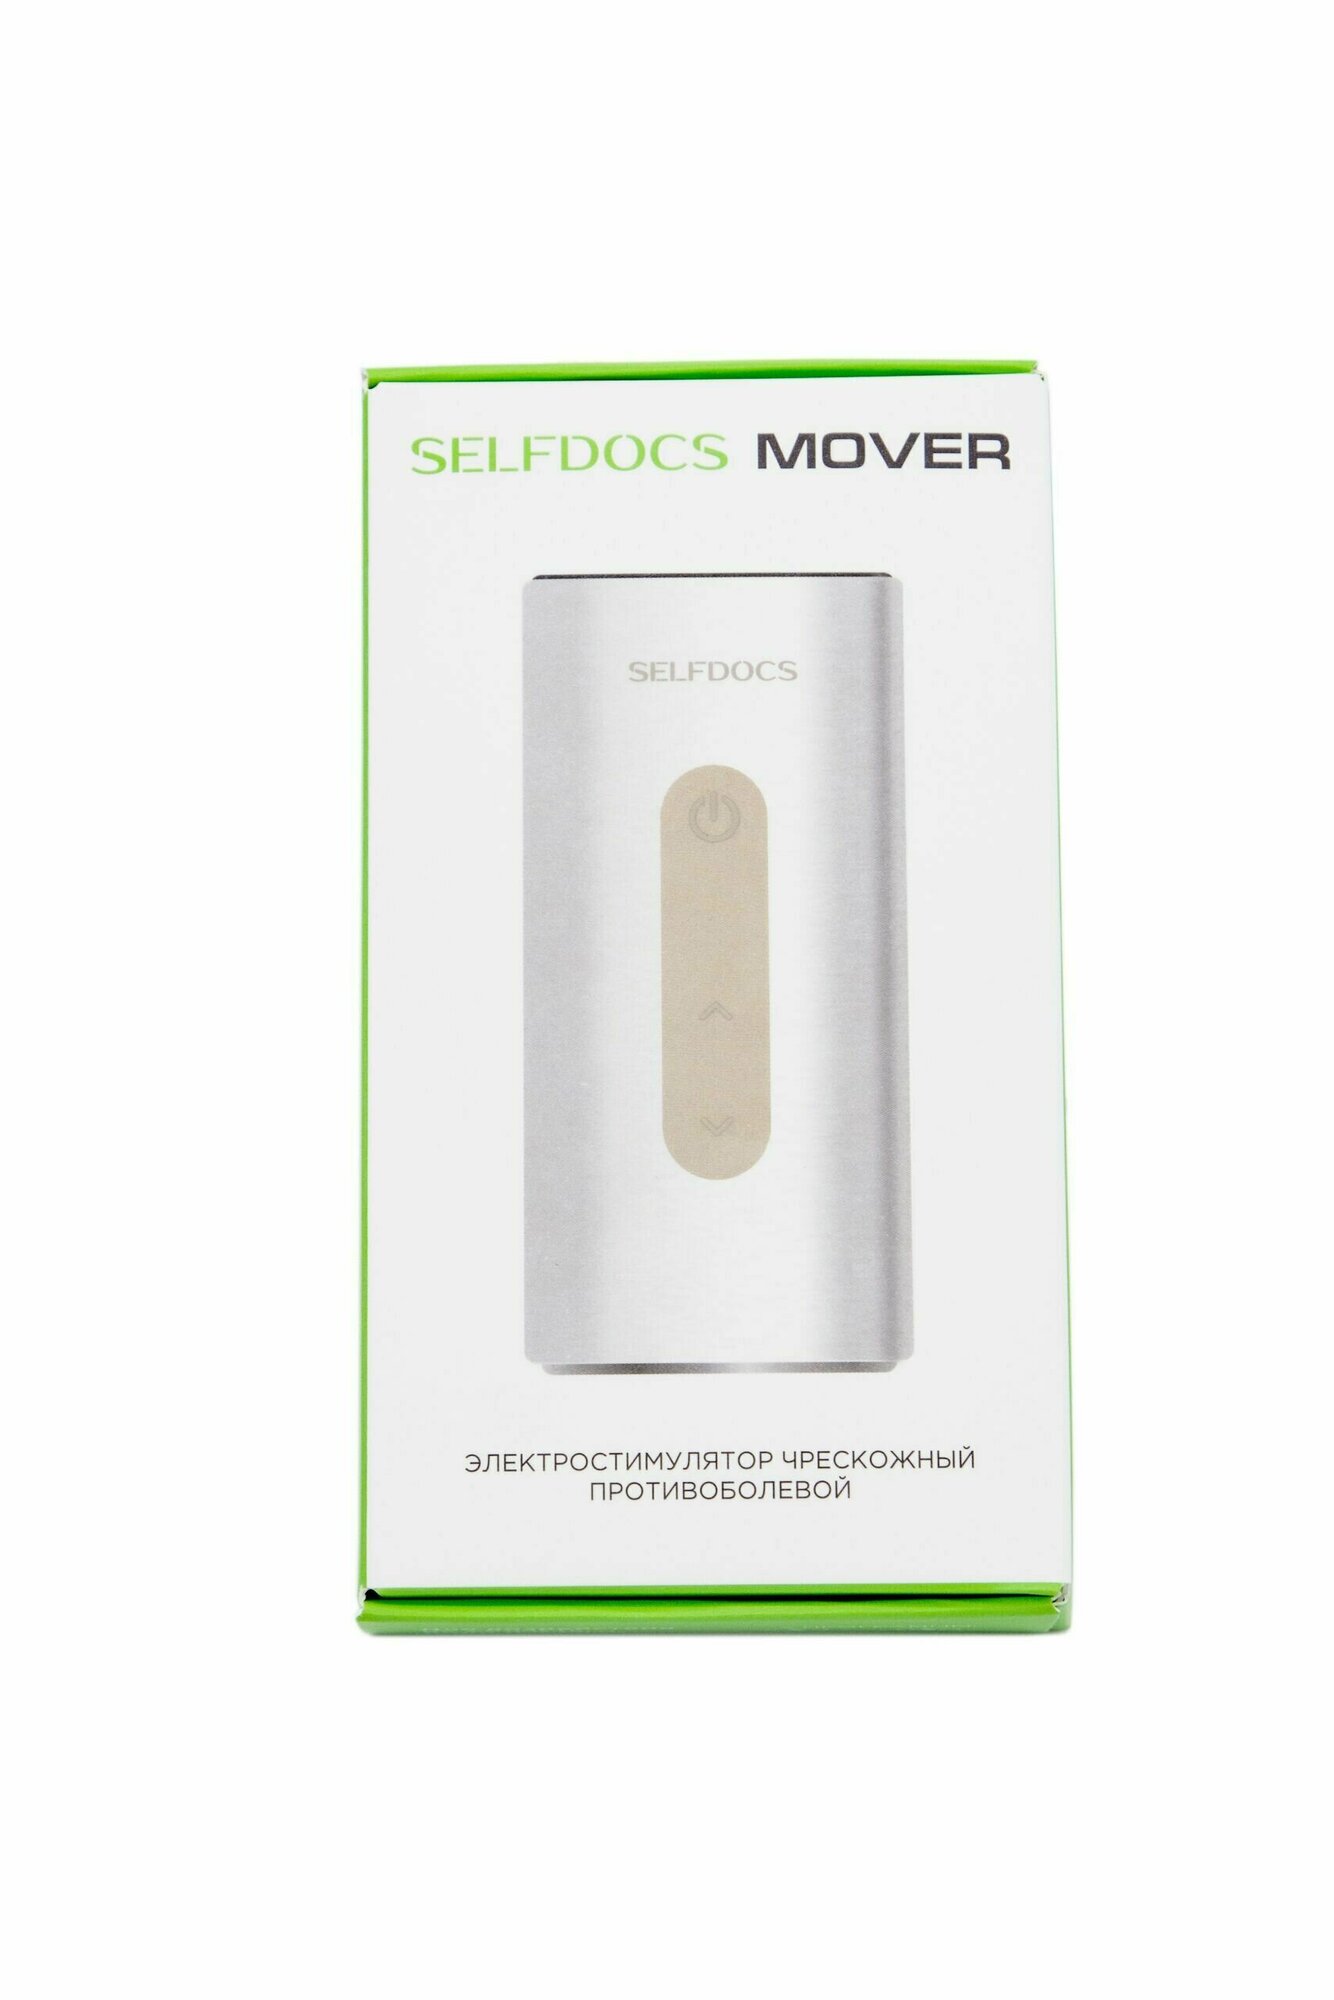 Электростимулятор чрескожный Selfdocs Mover для снятия боли